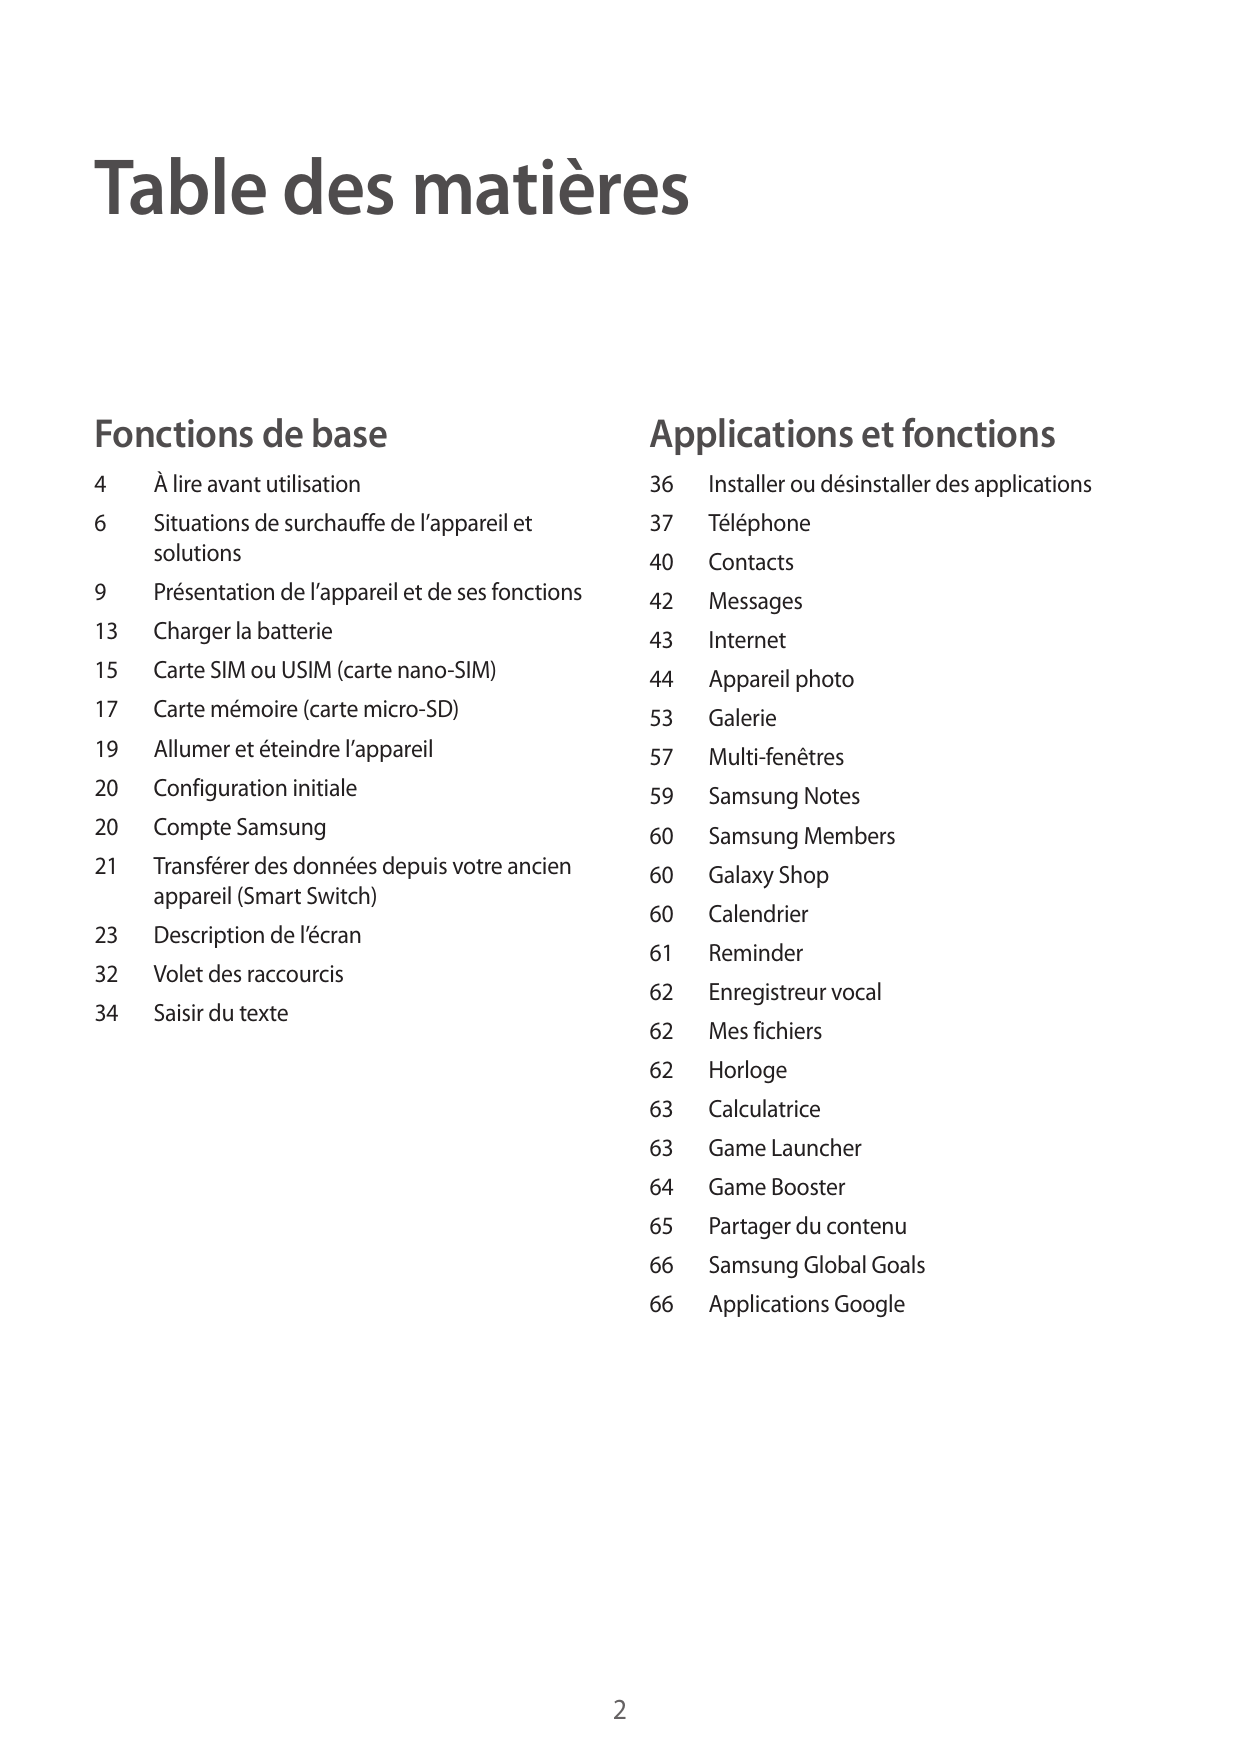 Table des matièresFonctions de baseApplications et fonctions4À lire avant utilisation366Situations de surchauffe de l’appareil e